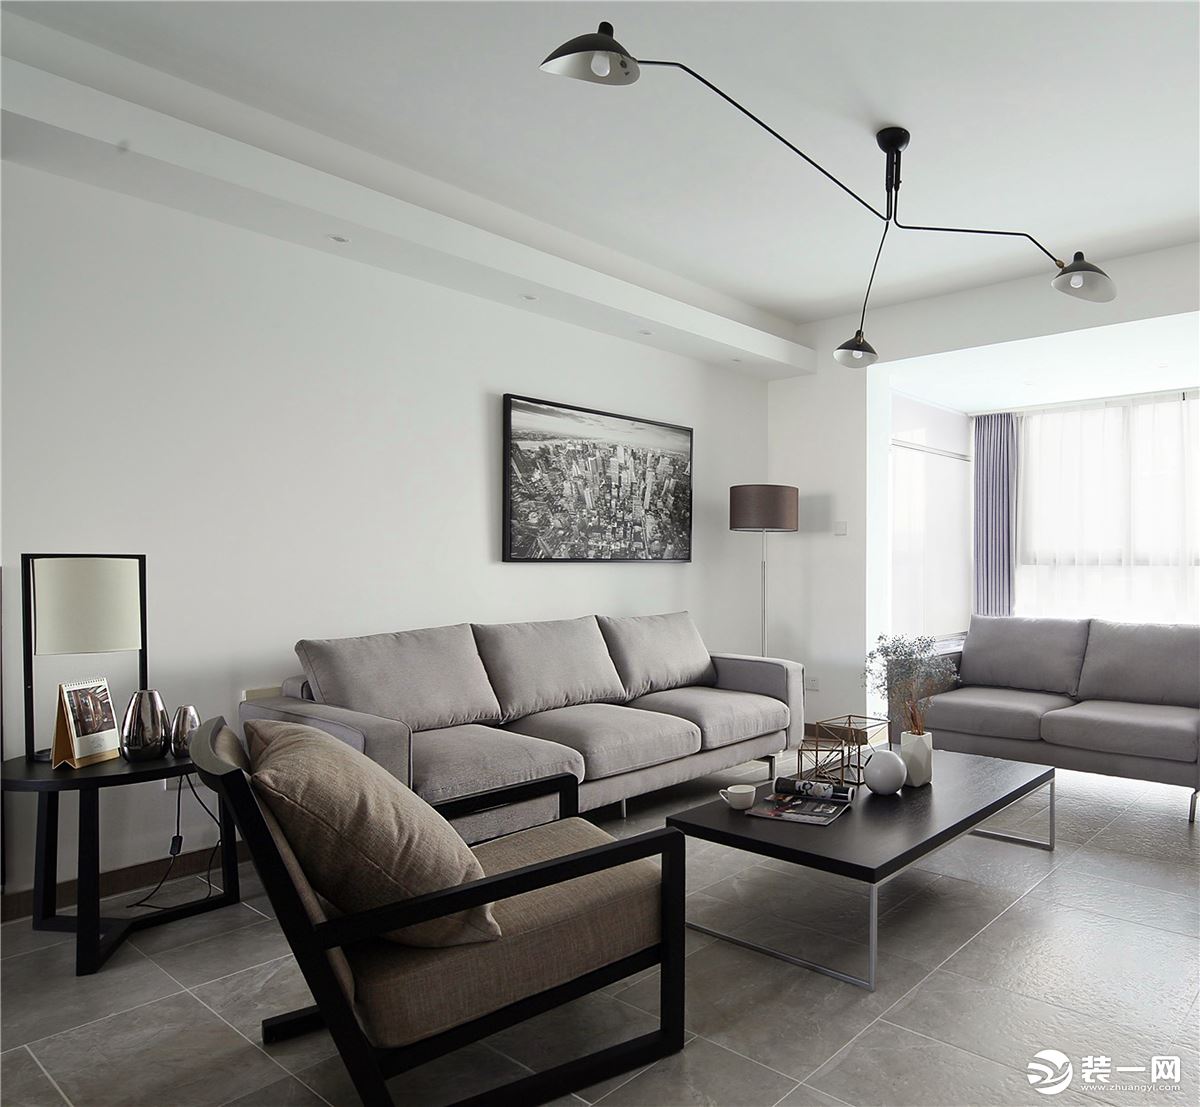 客厅以白色和浅灰色为主，淡淡的颜色好像不含一丝杂质，显得特别宽敞明亮，呈现出简约大方又有格调居住环境